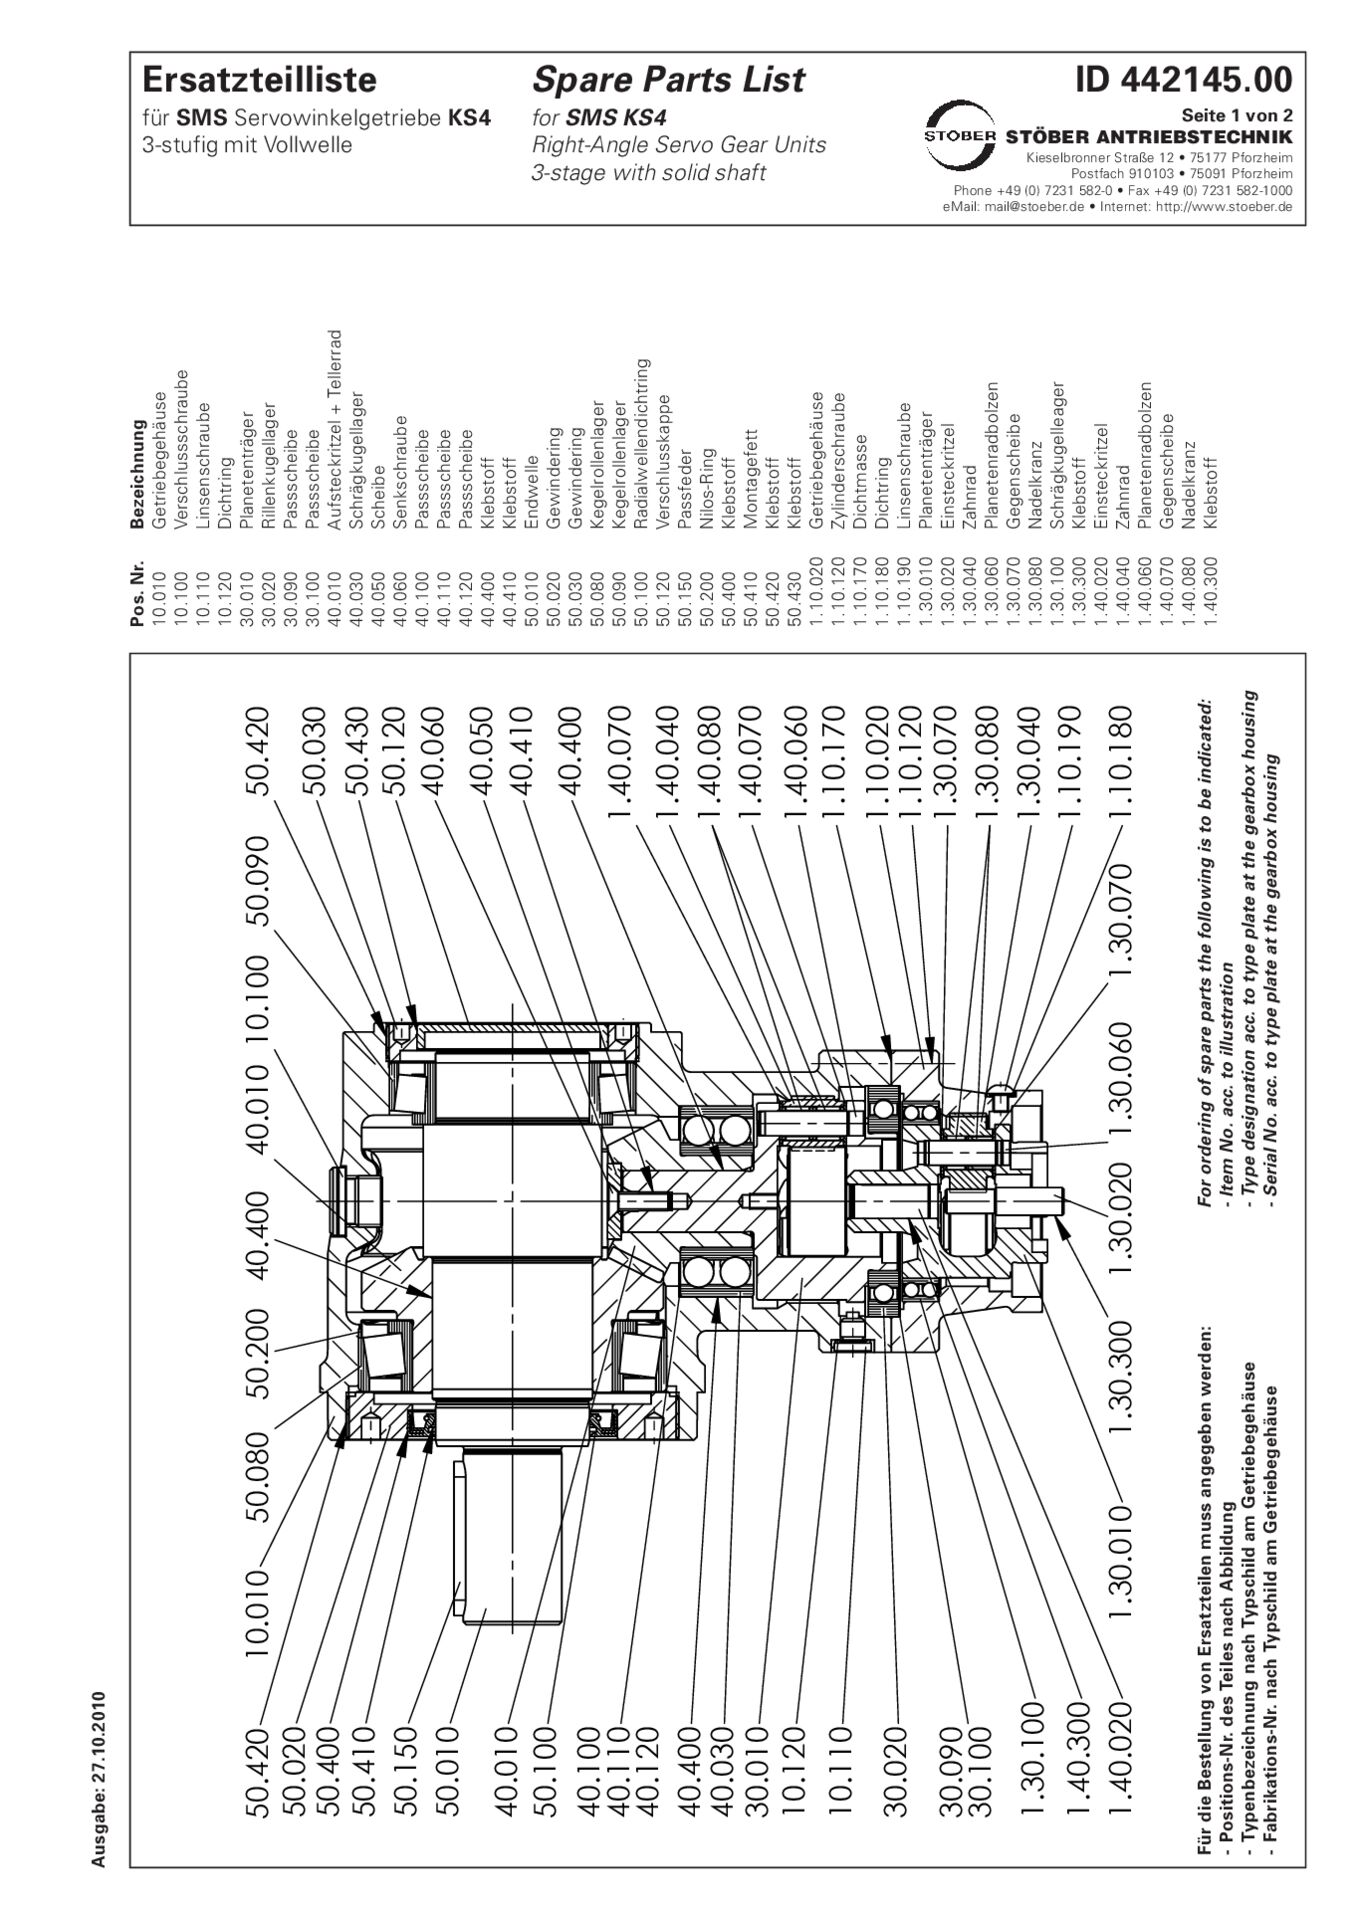 Replacement parts list helical bevel gear units KS403 3-stage with solid shaft for SMS gear unitsErsatzteilliste Kegelradgetriebe KS403 3-stufig mit Vollwelle für SMS-Getriebe